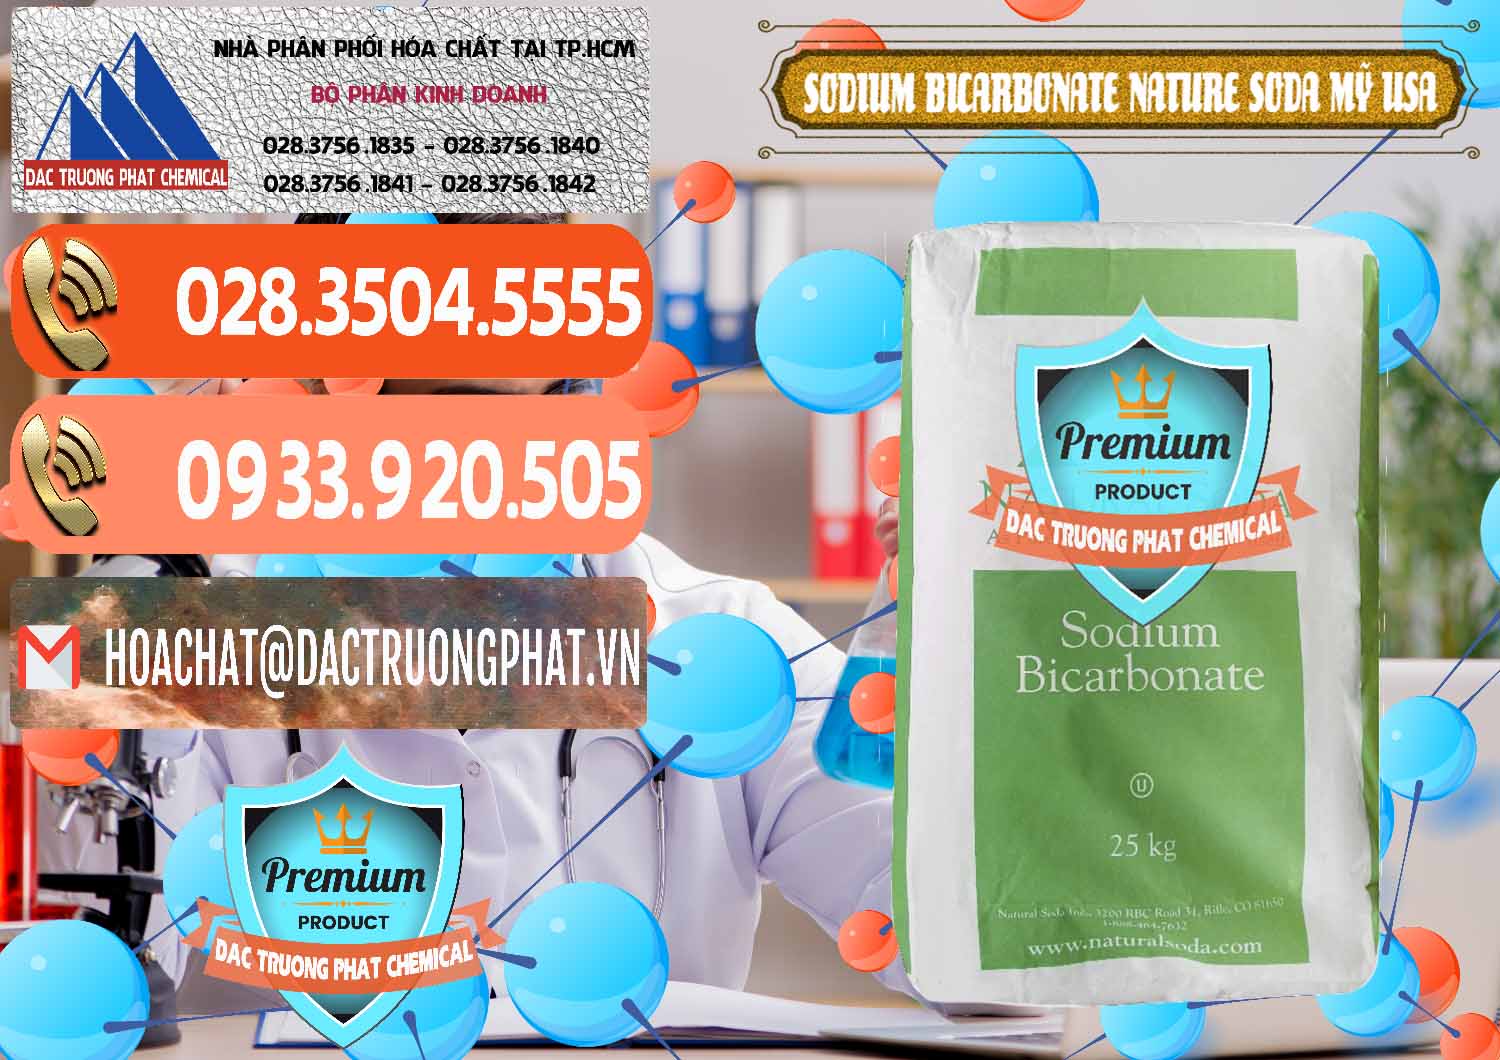 Phân phối - bán Sodium Bicarbonate – Bicar NaHCO3 Food Grade Nature Soda Mỹ USA - 0256 - Đơn vị chuyên cung ứng ( phân phối ) hóa chất tại TP.HCM - hoachatmientay.com